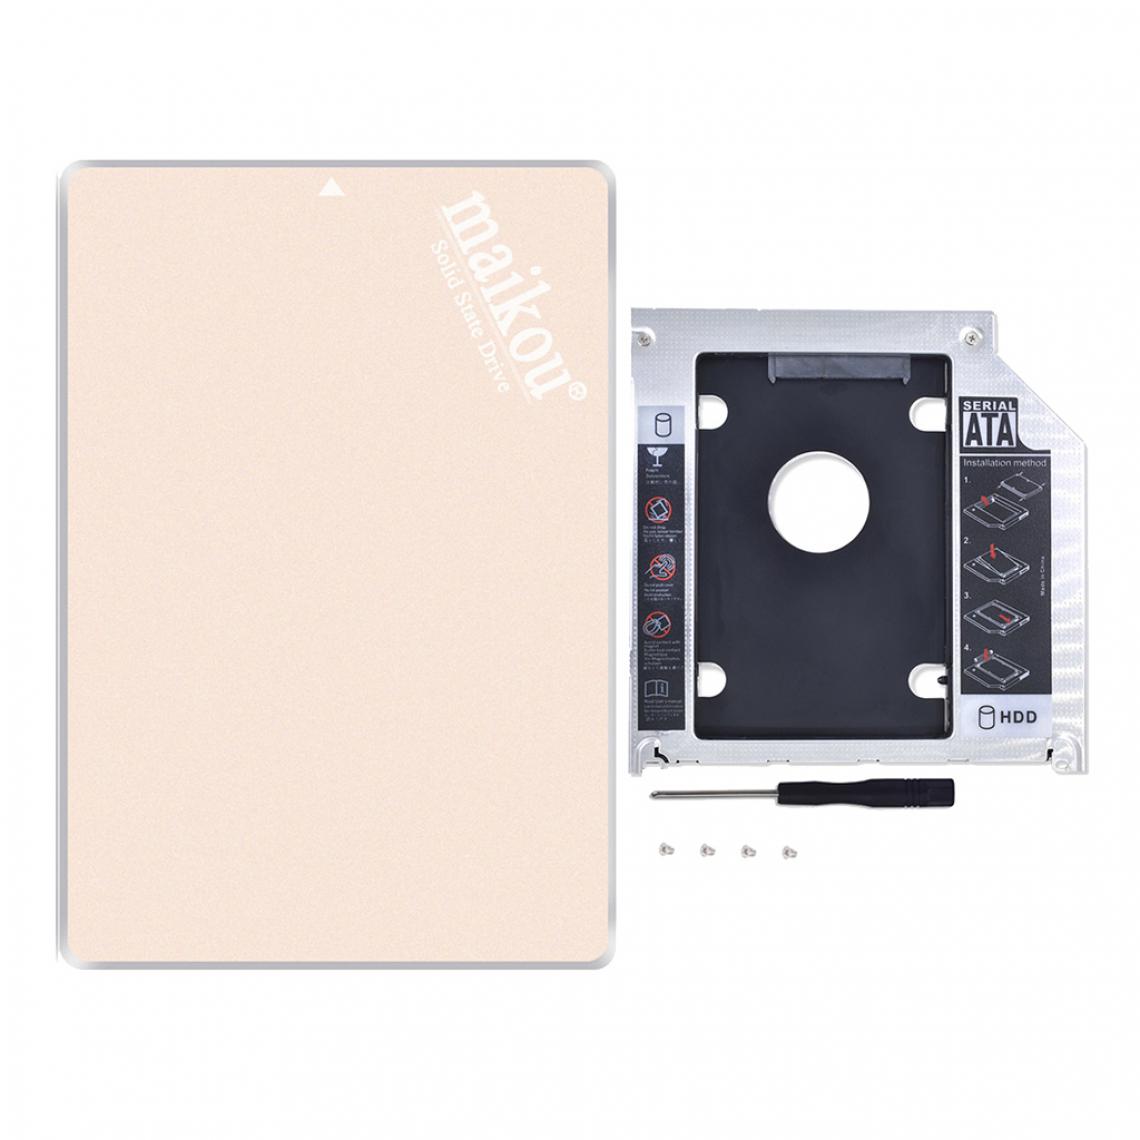 marque generique - 2.5 '' 60G SATA SSD Disque SSD interne + Cadran de baie optique de 9,5 mm, doré - Disque Dur interne